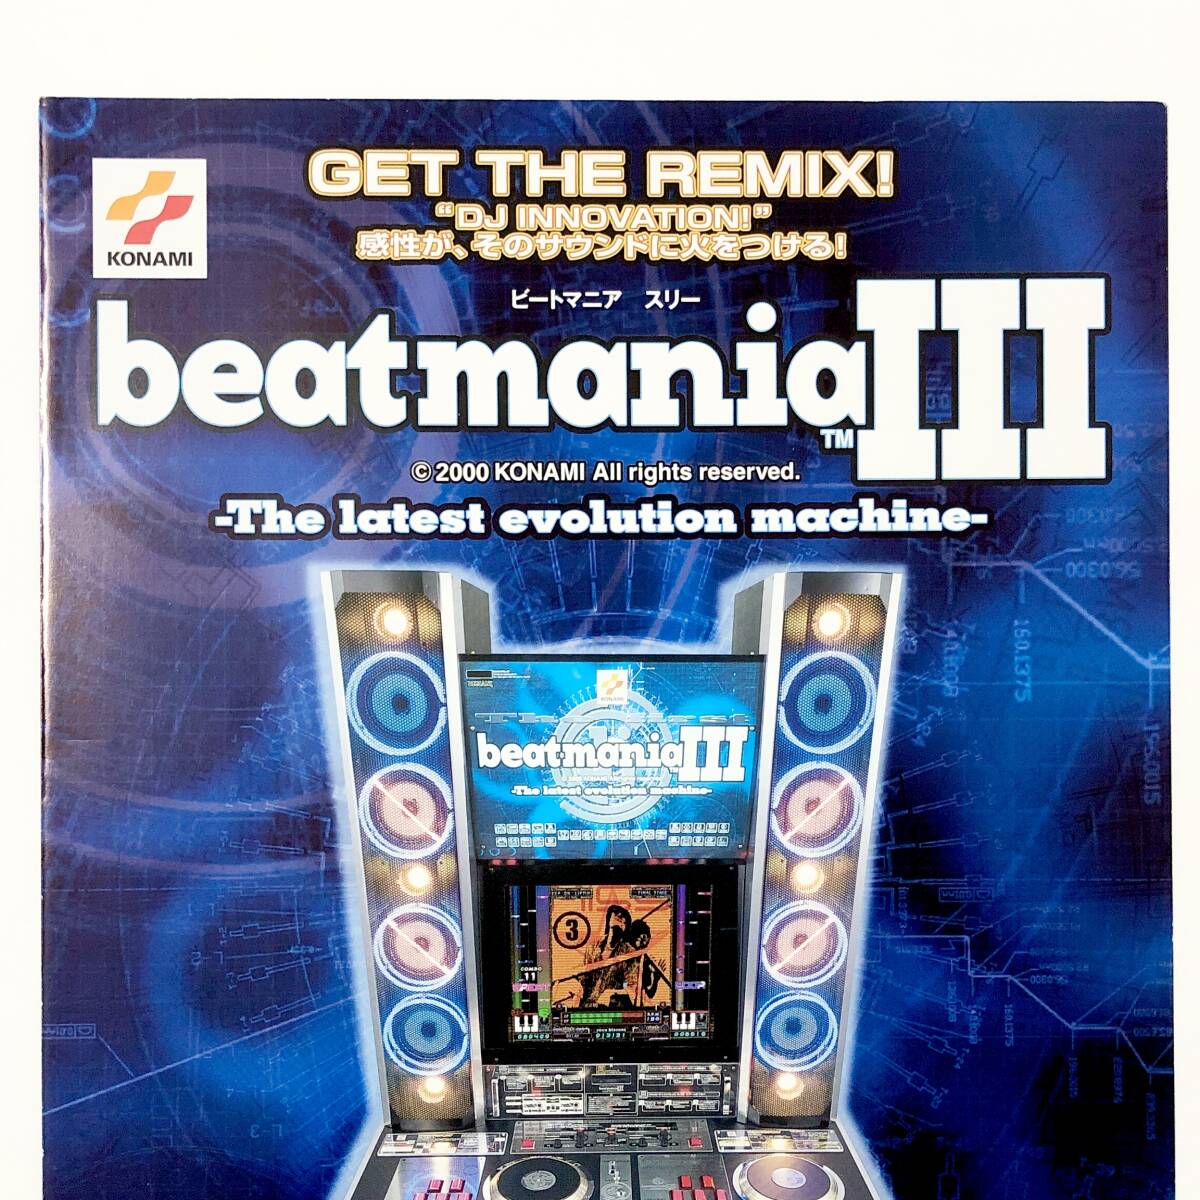 ビートマニア スリー A4サイズ チラシ コナミ ビーマニ アーケード フライヤー 広告 Beatmania Ⅲ Promo Ad Flyer Konami Arcade Game_画像5